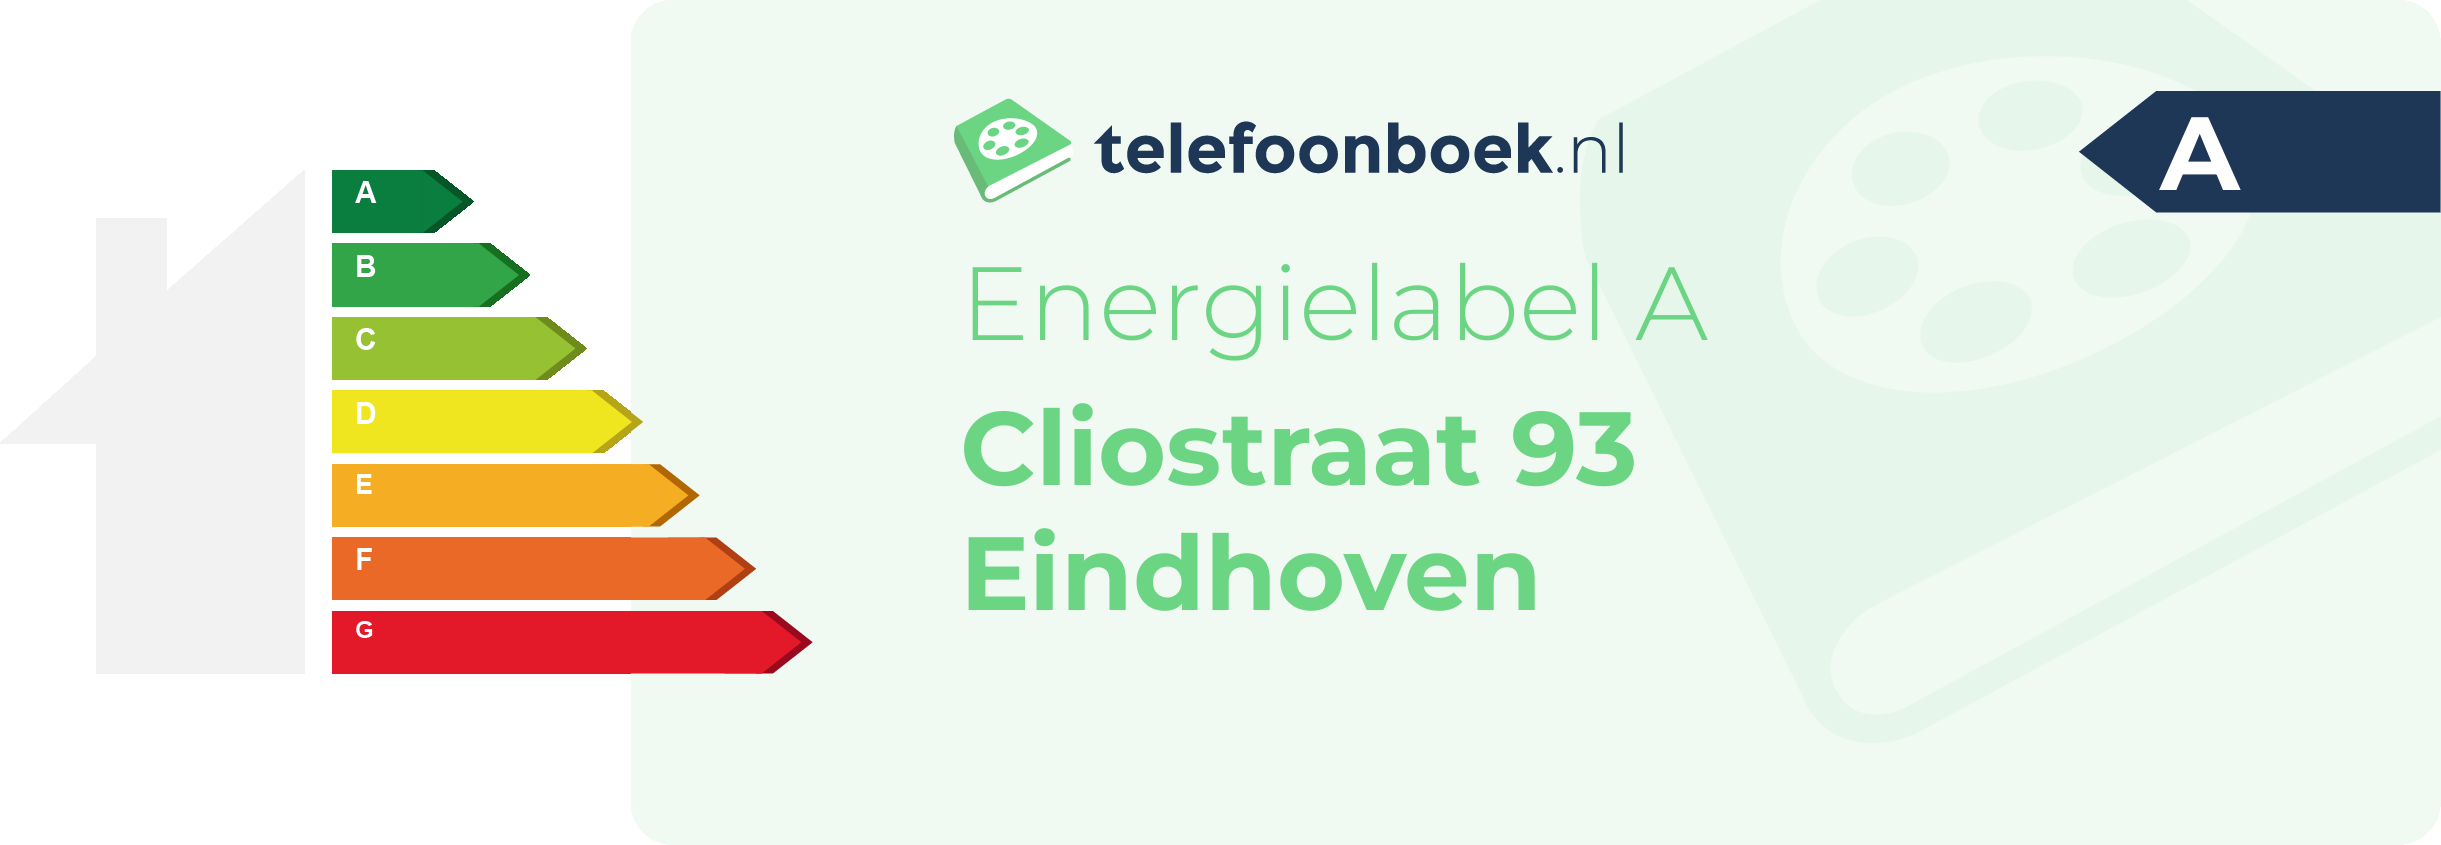 Energielabel Cliostraat 93 Eindhoven